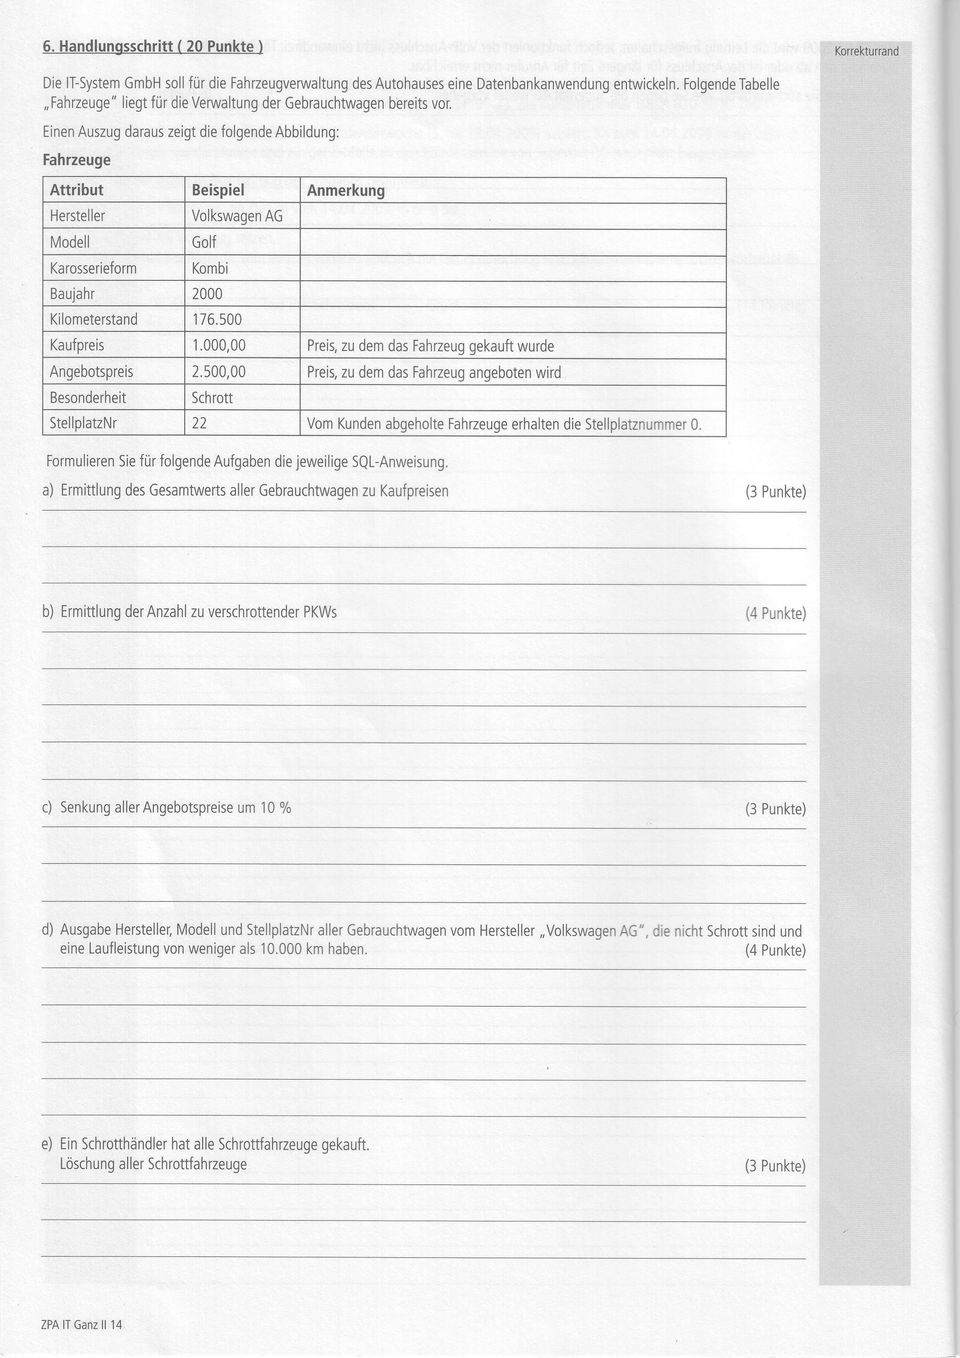 . - Fanfzeuge Attribut Beispiel Anmerkung Hersteller Mdell Karsseriefrm Vlkswagen AG Glf Kmbi Baujahr 2000 Kilmeterstand 176.500 Kaufpreis 1.000,00 Preit zu dem das Fahzeugekauft wurde Angebtspreis 2.